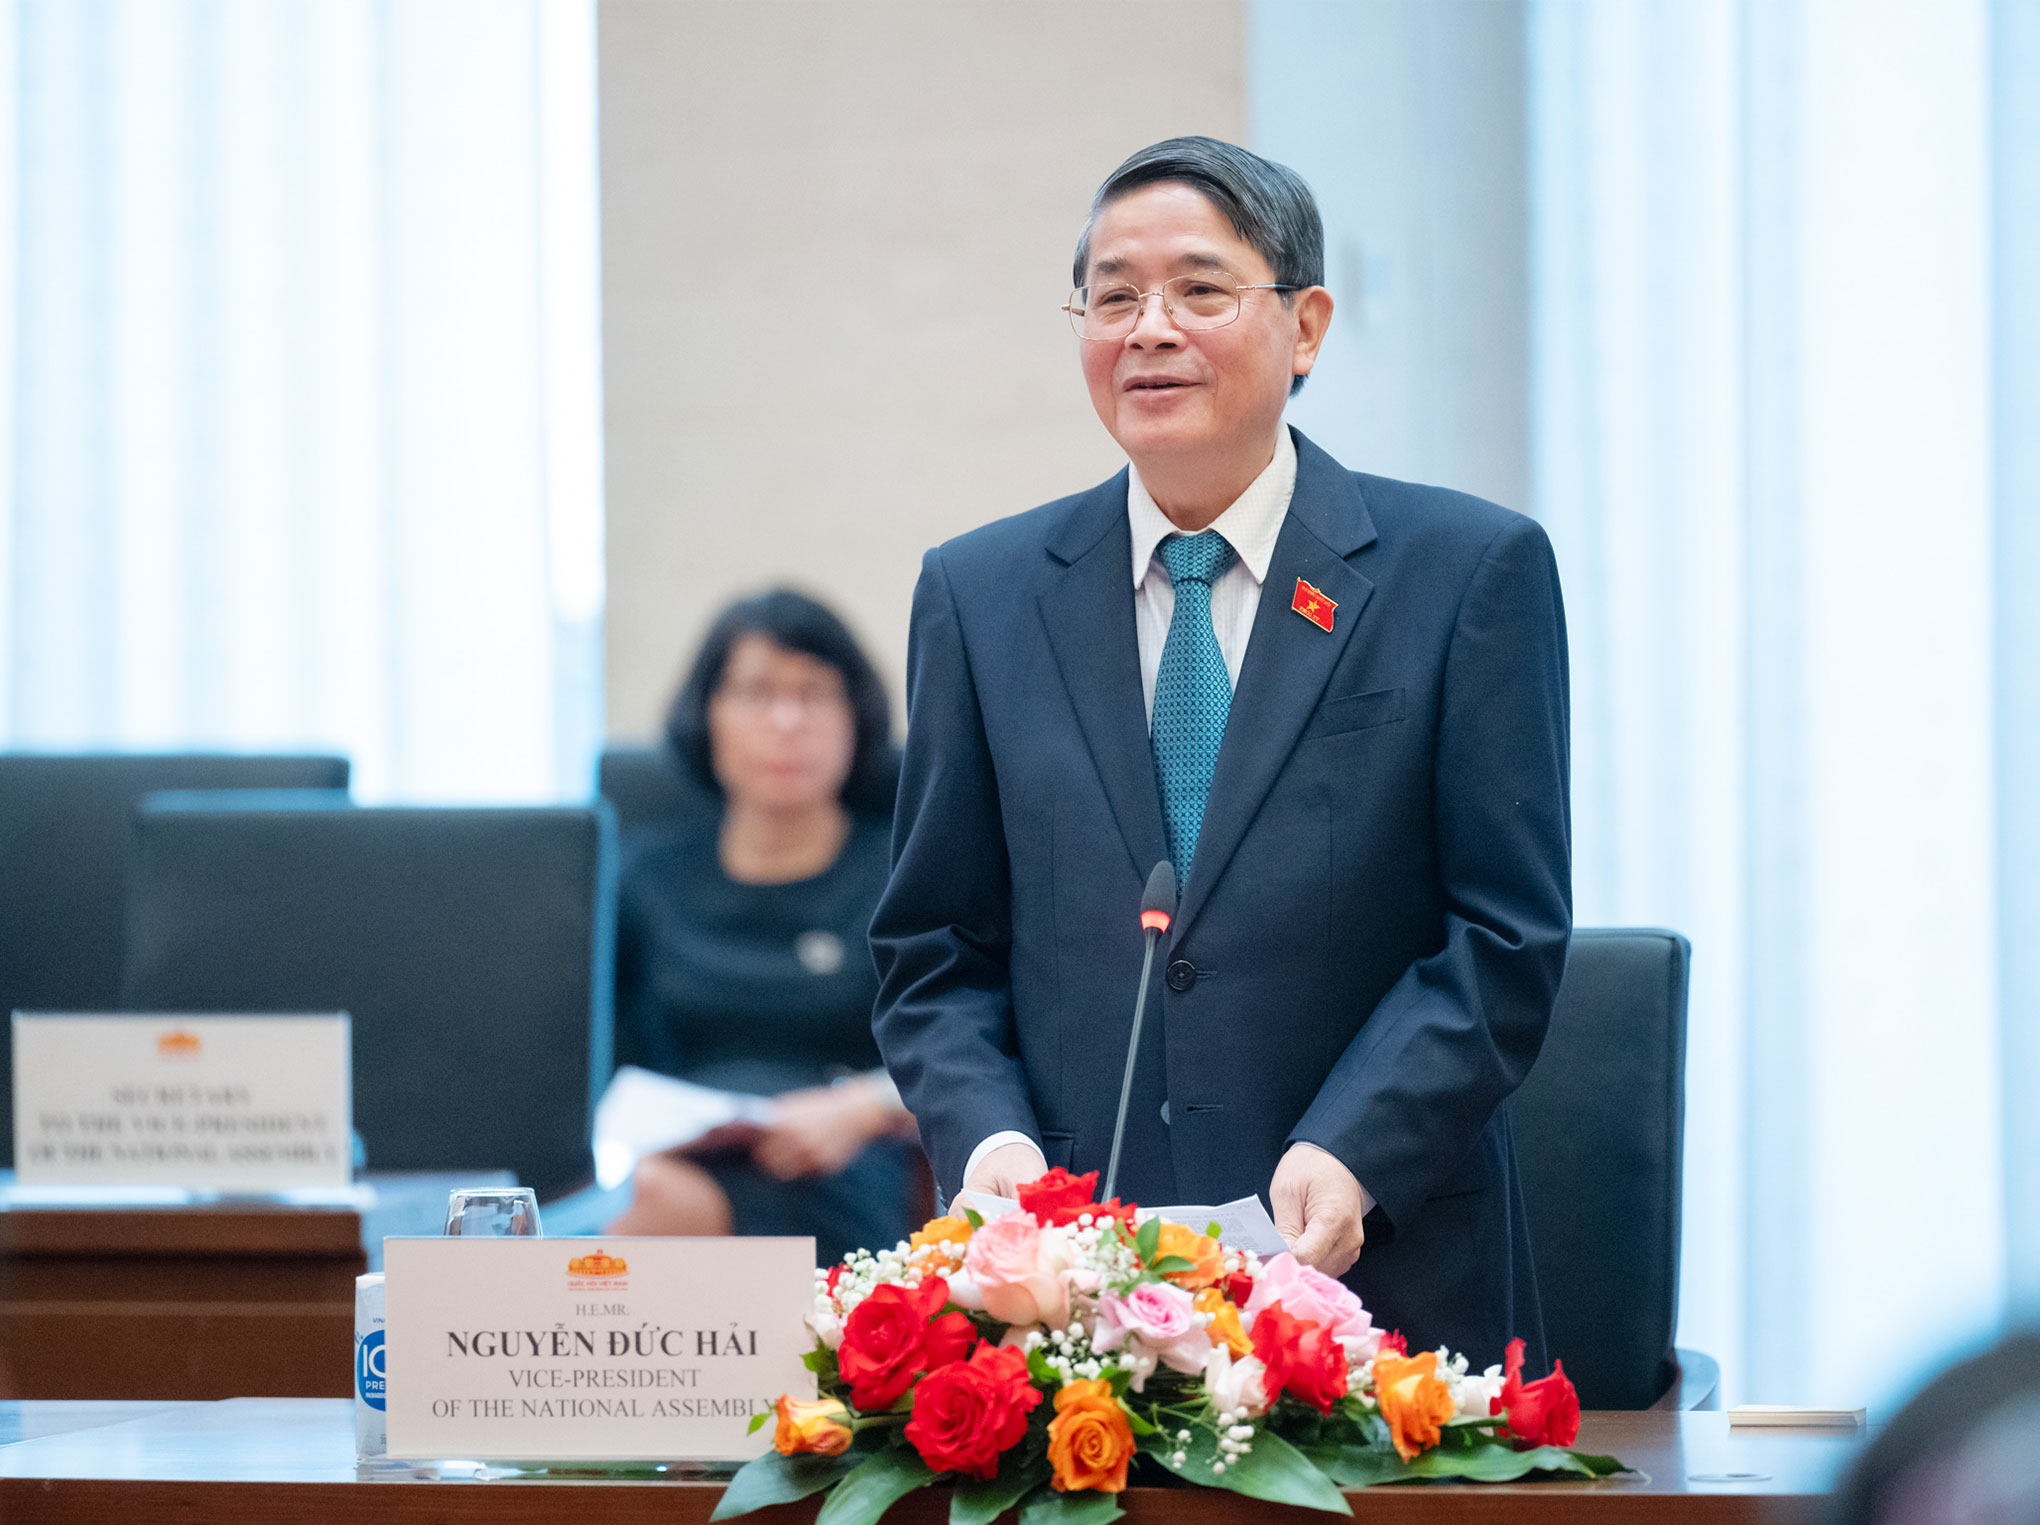 Phó Chủ tịch Quốc hội Nguyễn Đức Hải tiếp Đoàn doanh nghiệp Hội đồng Kinh doanh EU – ASEAN -0